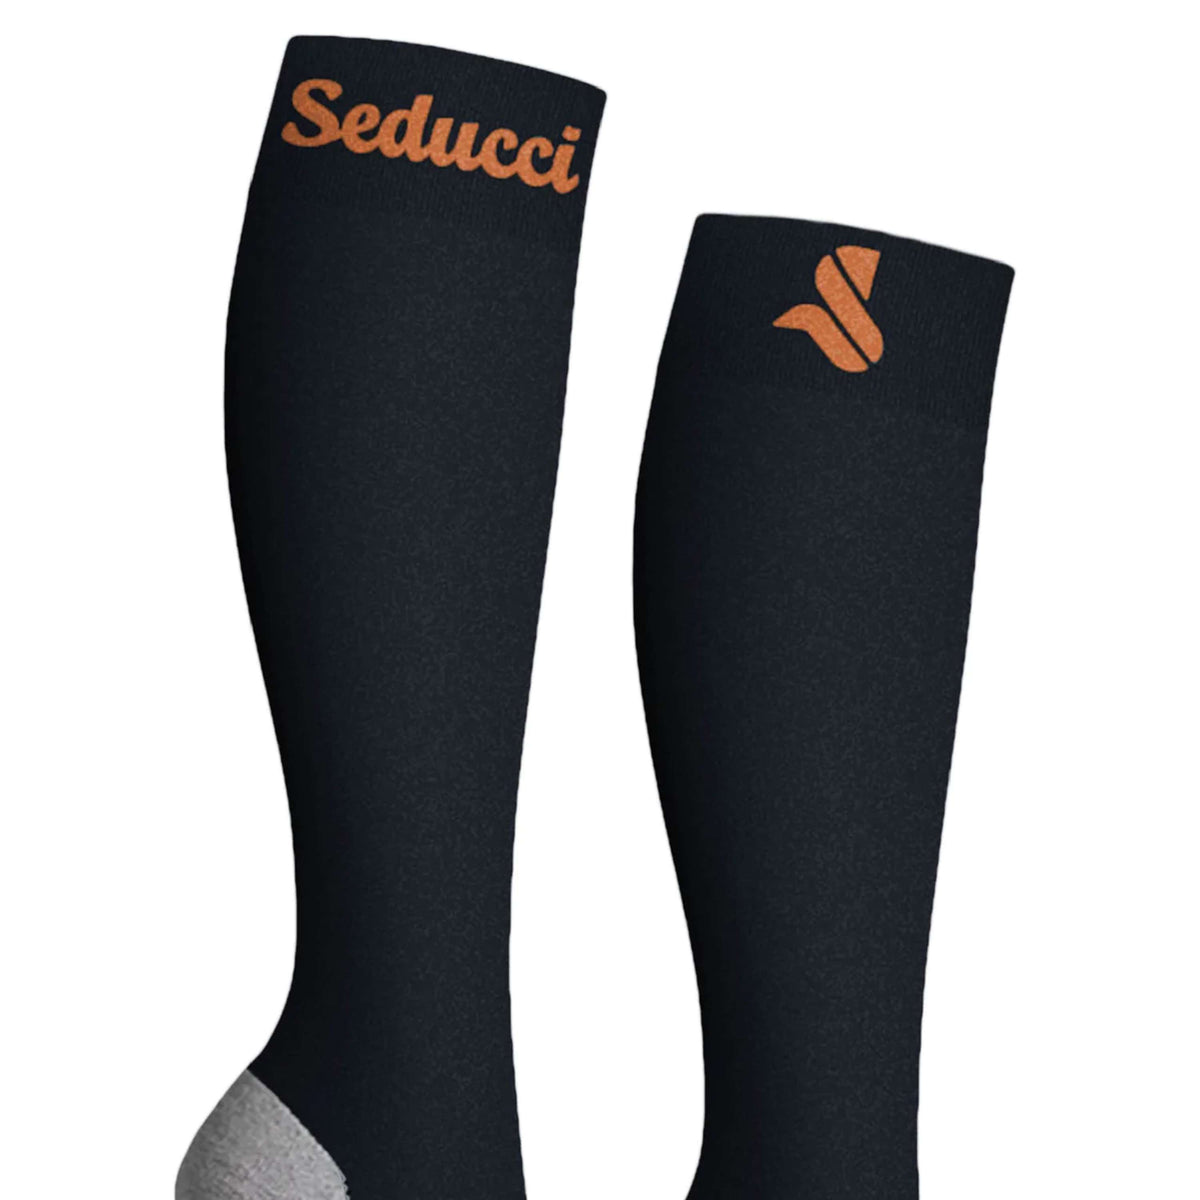 Seducci Socken Pro AG+ Navy Orange